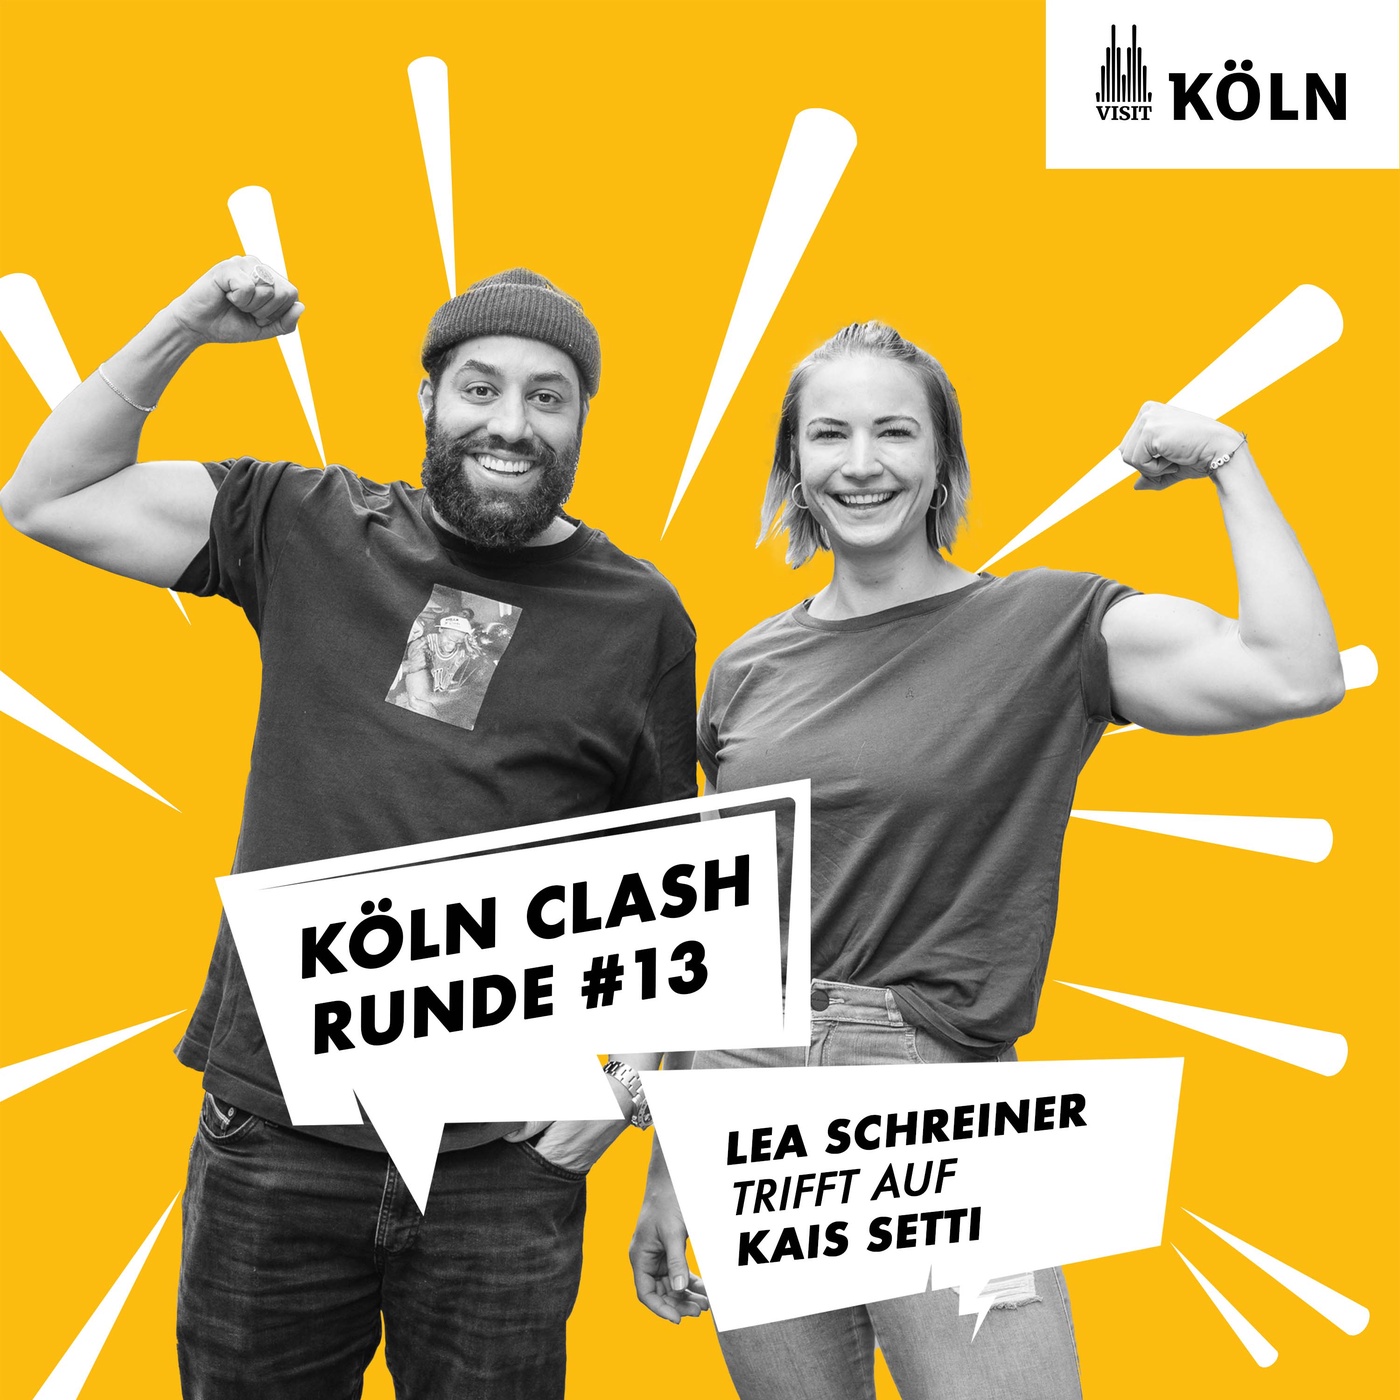 Köln Clash, Runde #13 - Lea Schreiner trifft auf Kais Setti